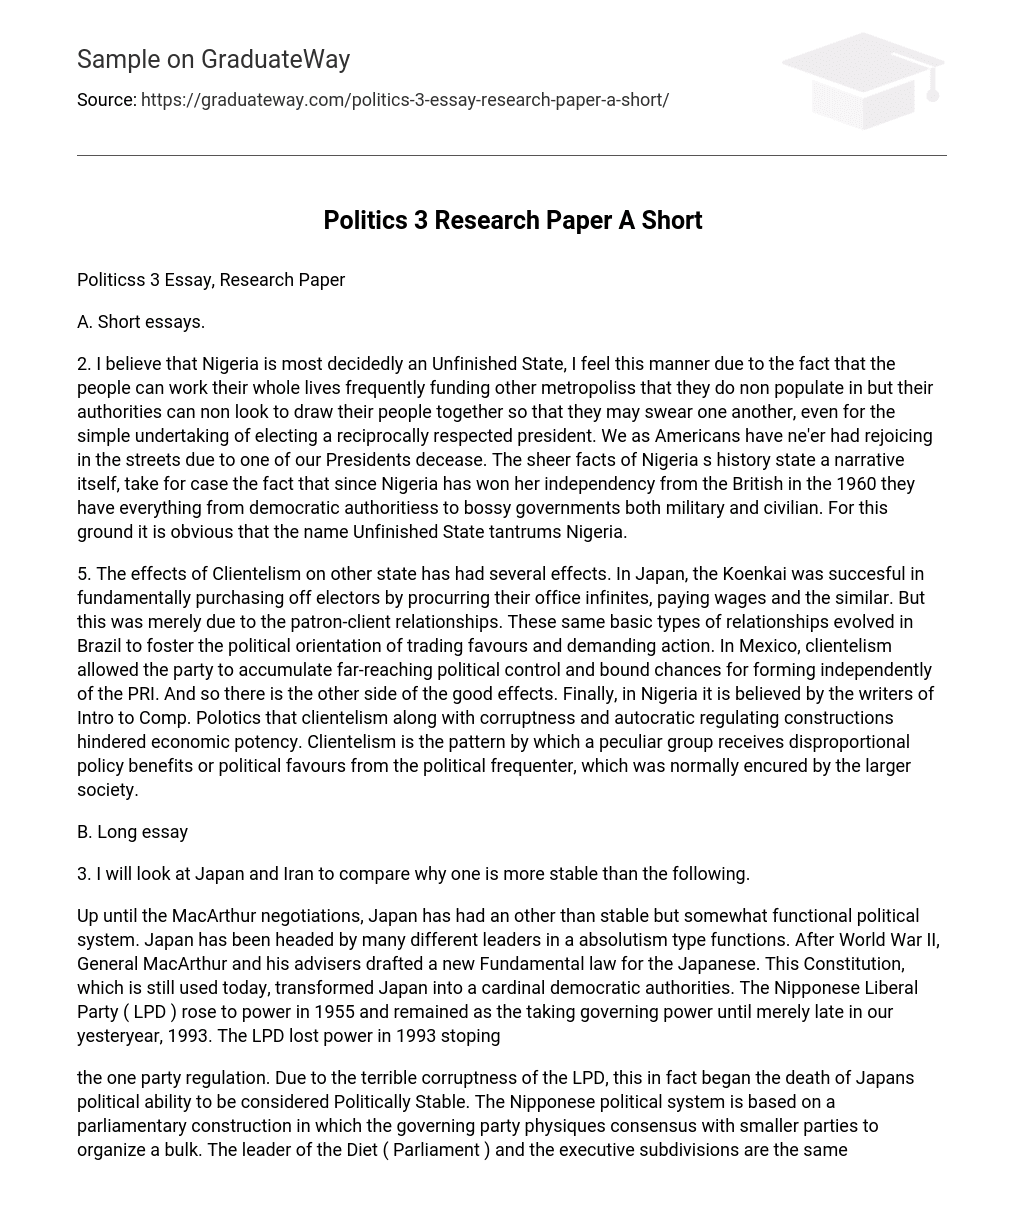 Politics 3 Research Paper A Short